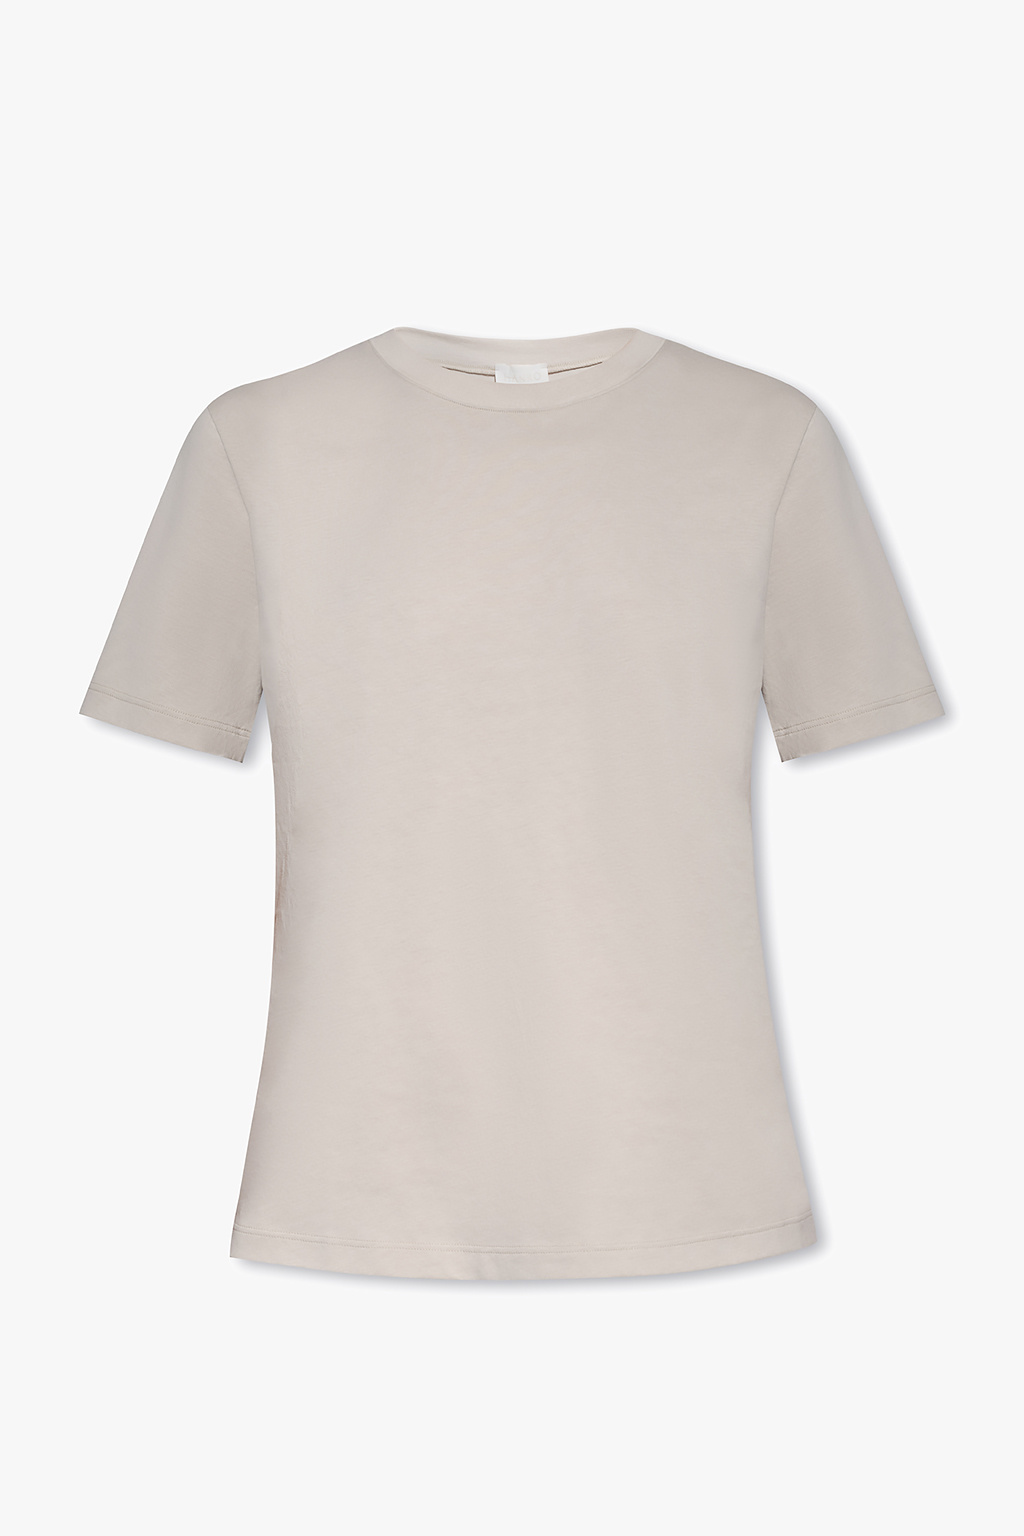 Hanro ‘Natural Shirts’ T-shirt